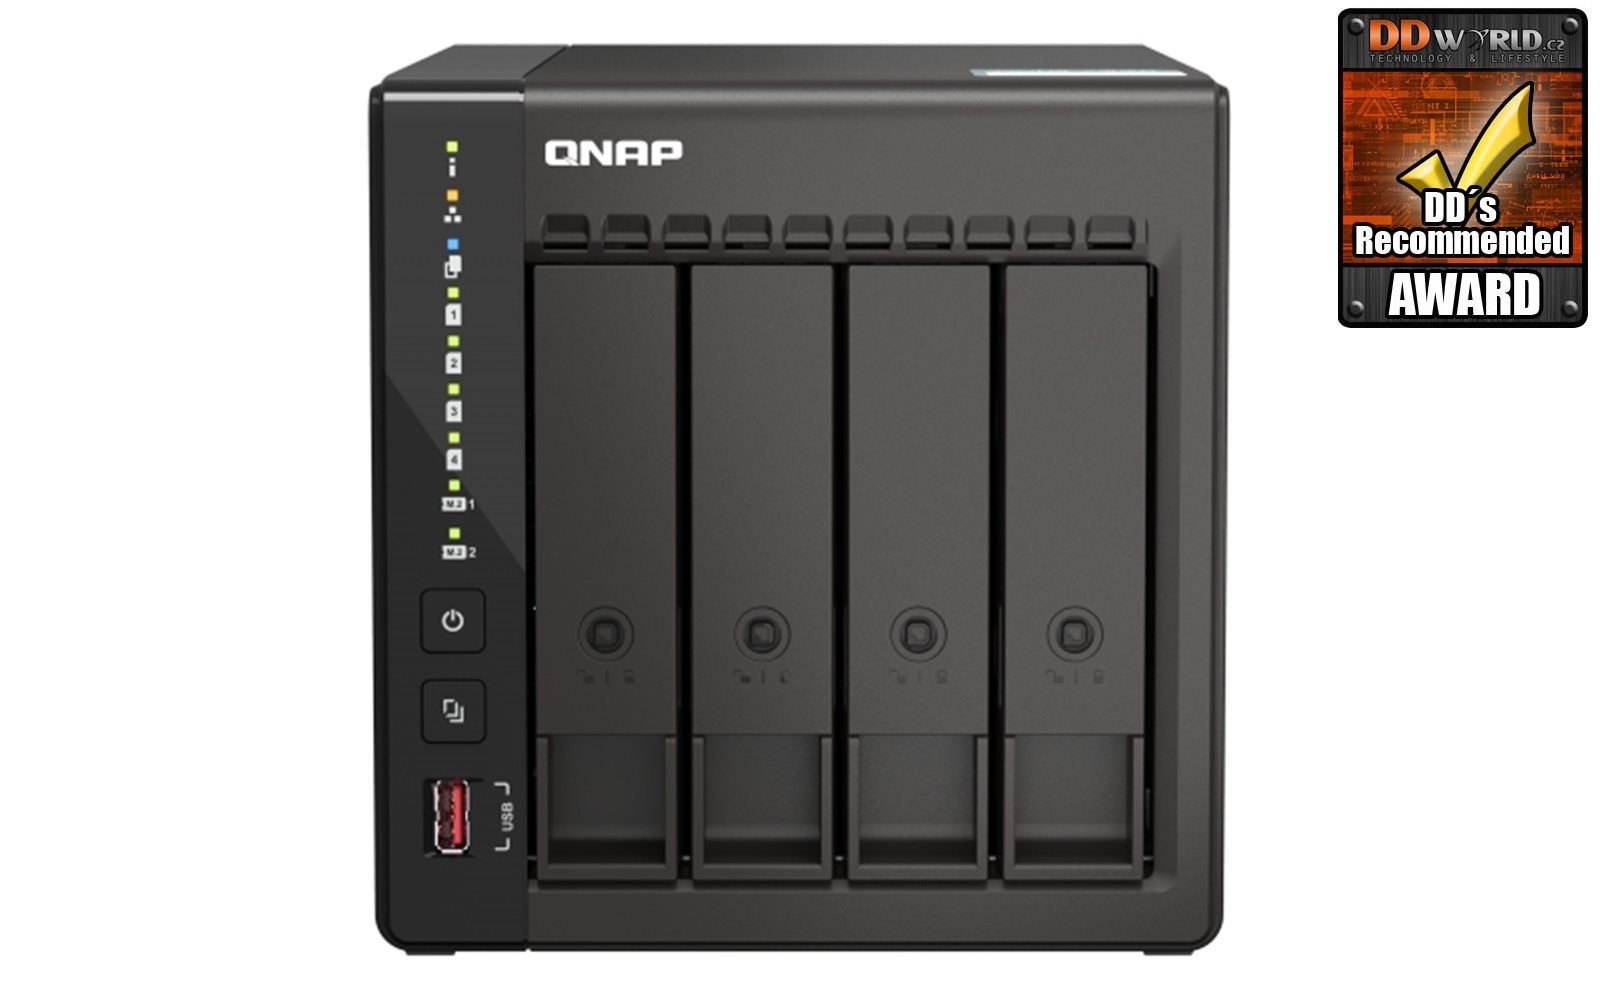 QNAP TS-453E-8G (4core 2,6GHz, 8GB RAM, 4x SATA, 2x M.2 NVMe slot, 2x